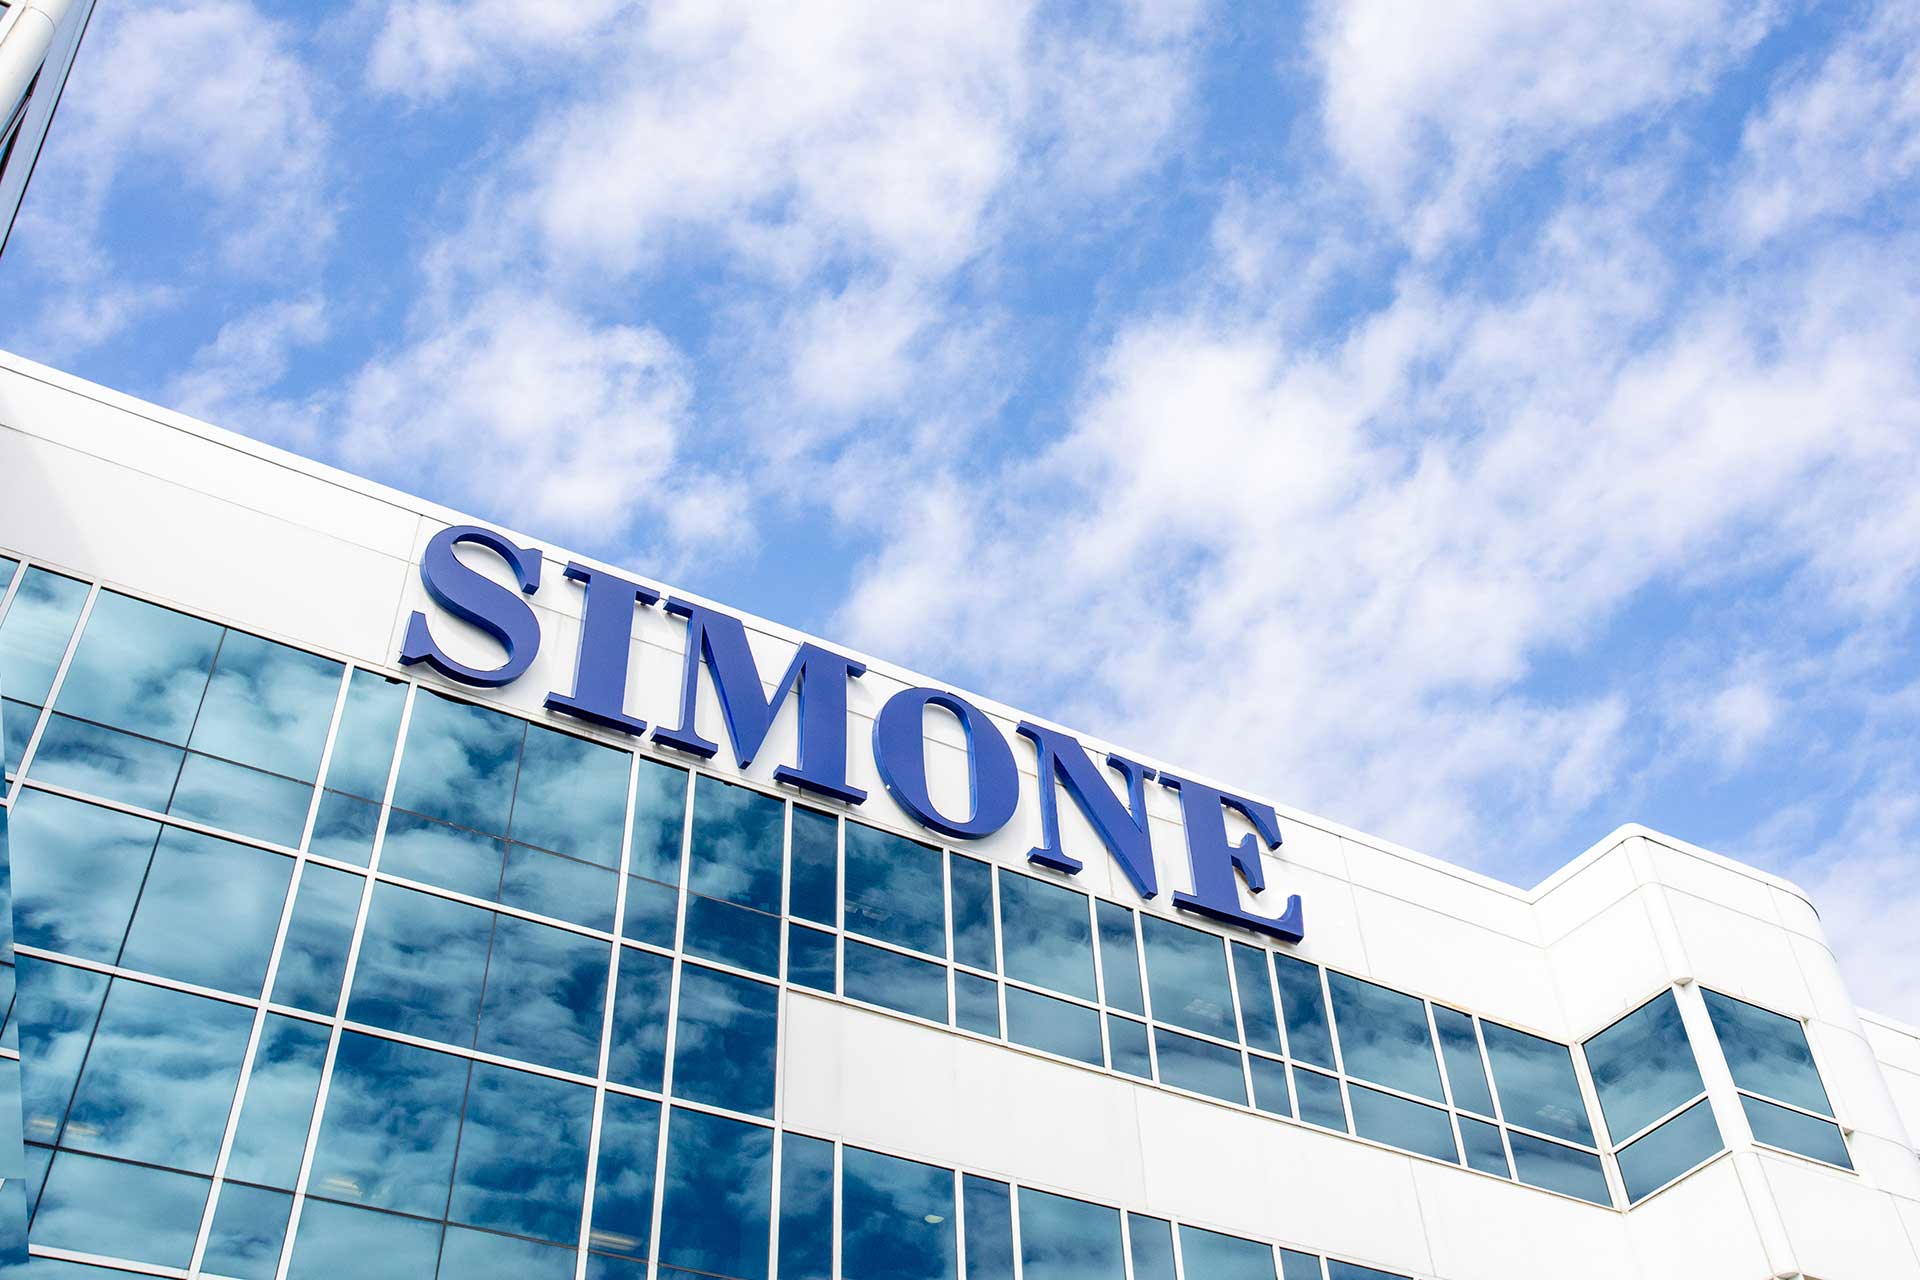 Simone Development Companies Building Front